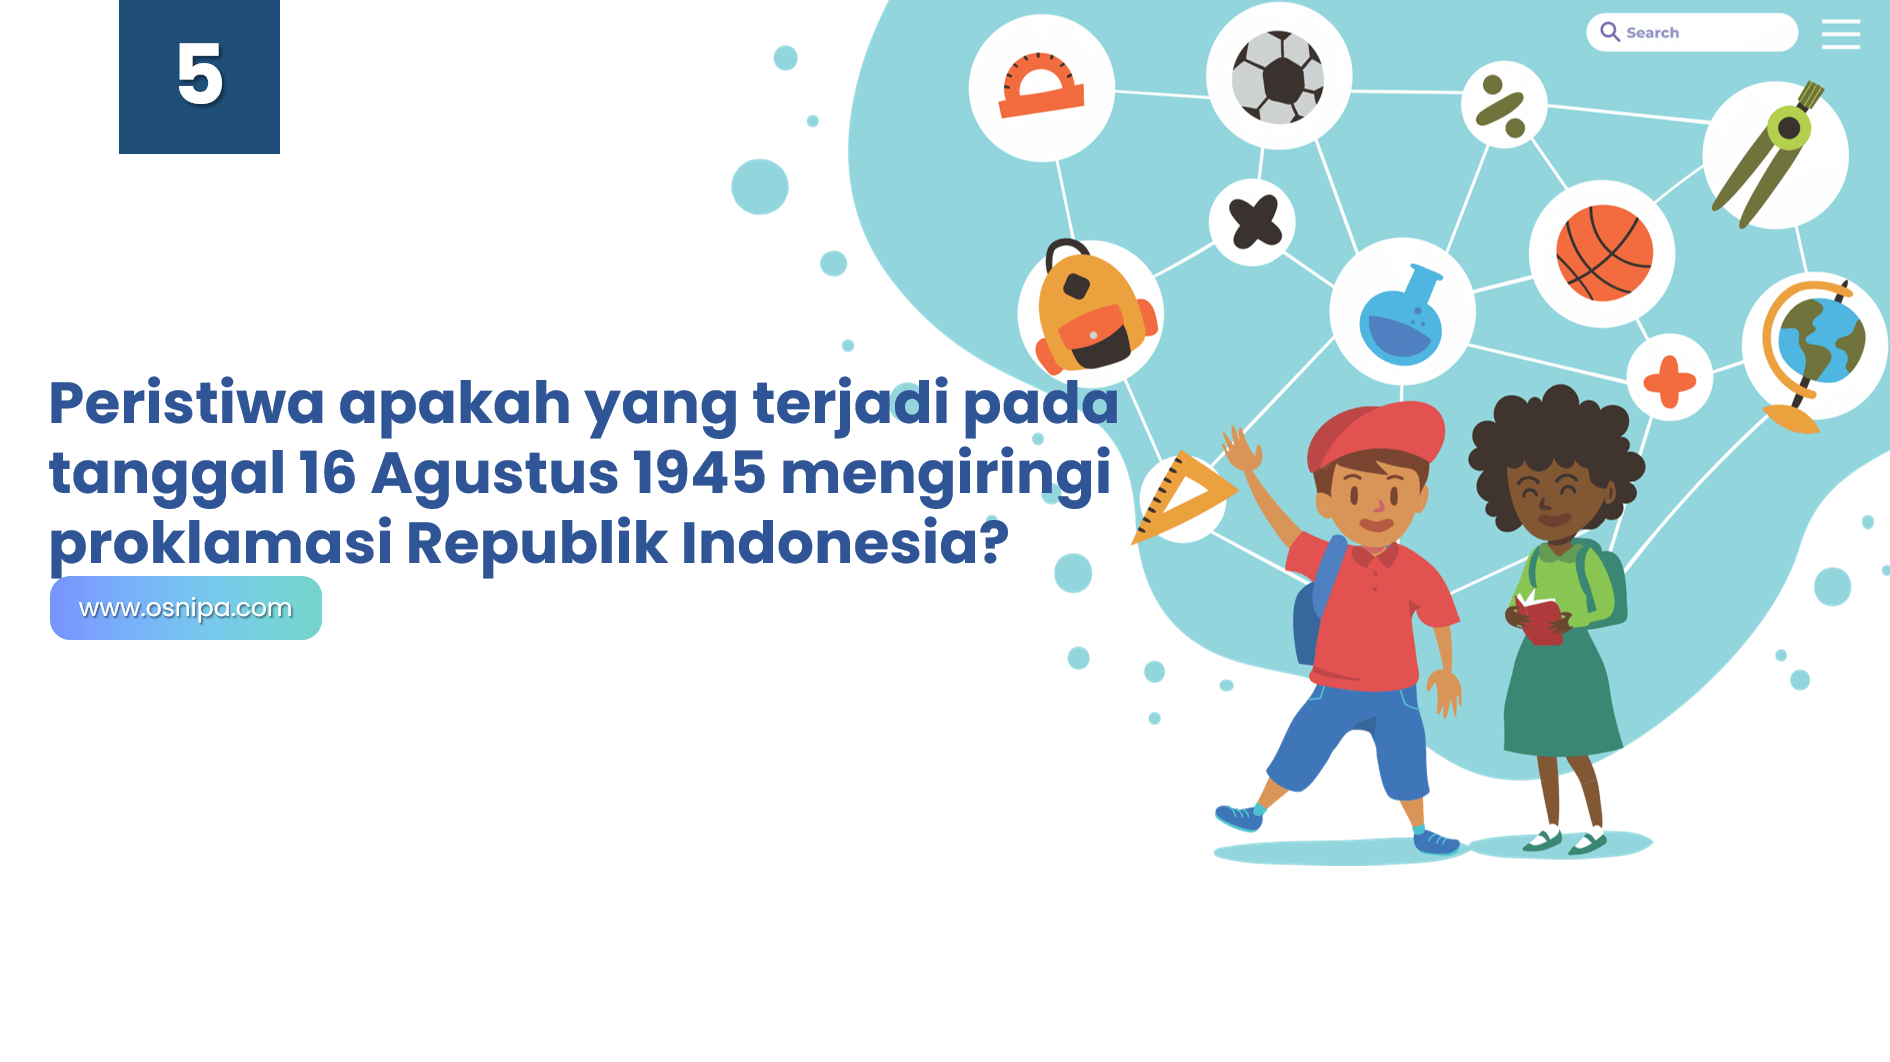 Peristiwa apakah yang terjadi pada tanggal 16 Agustus 1945 mengiringi proklamasi Republik Indonesia?